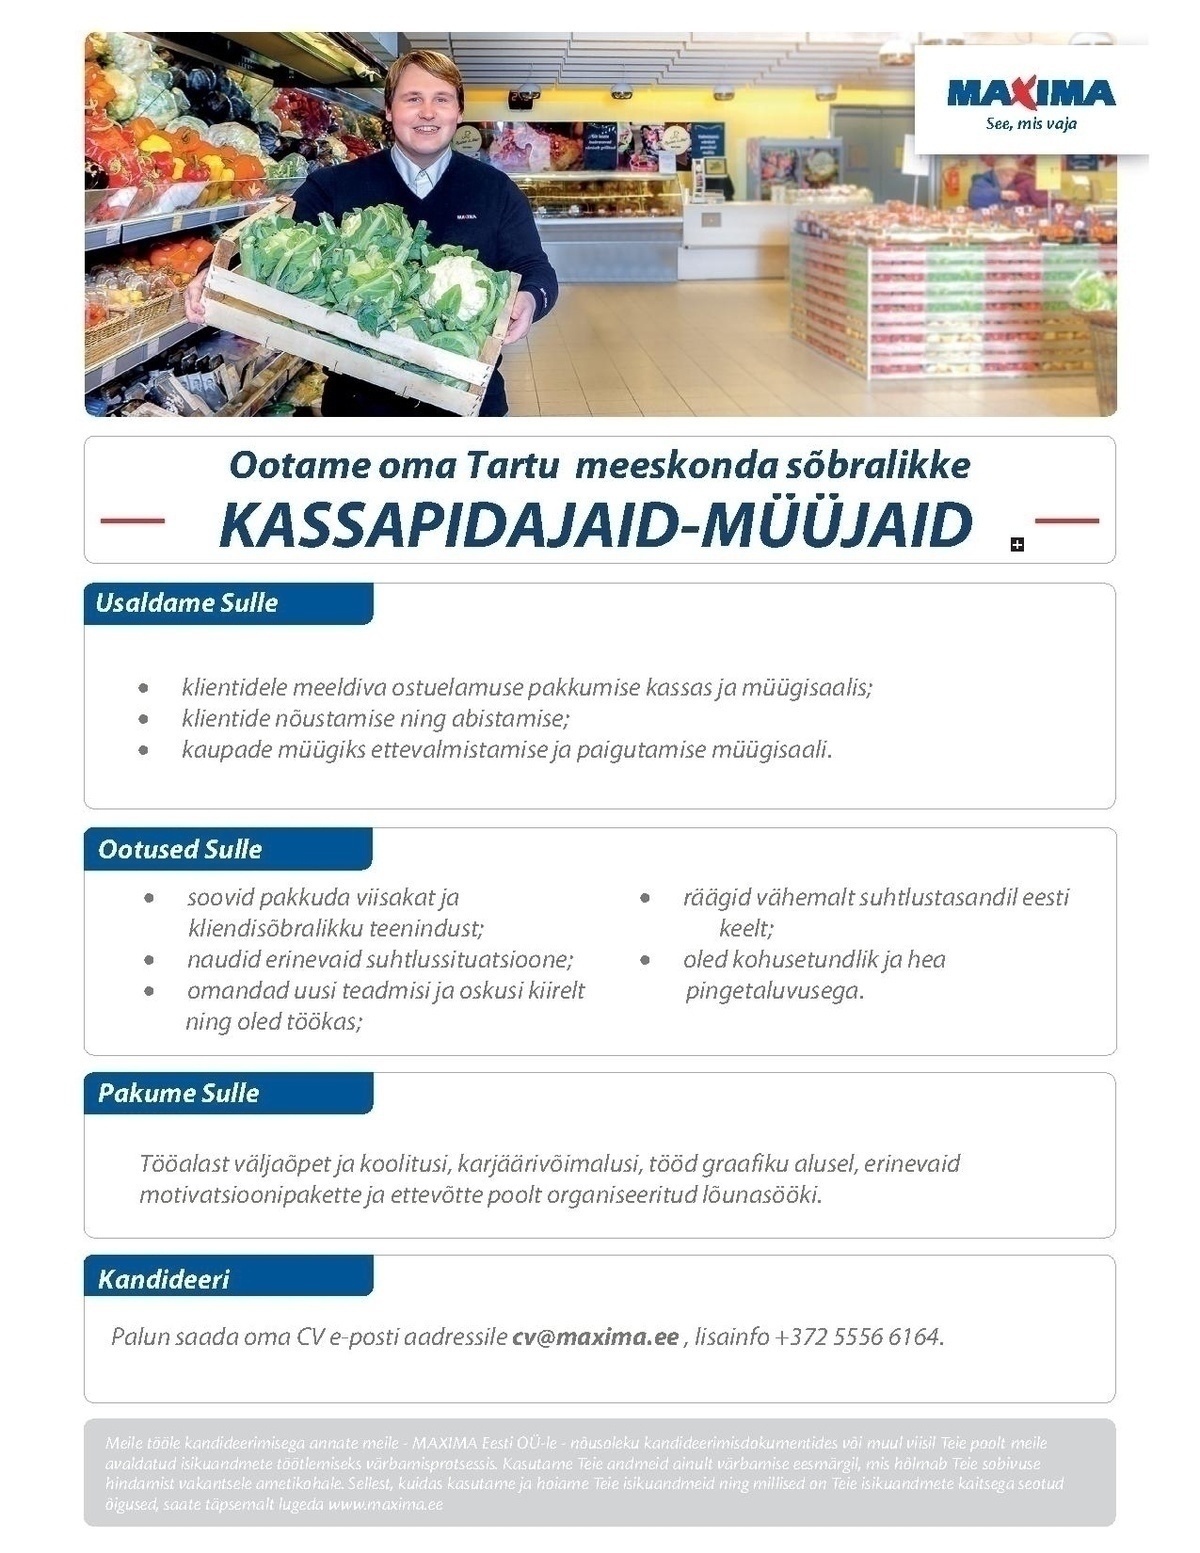 Maxima Eesti OÜ Kassapidaja-müüja, UUS Tartu Maxima XX